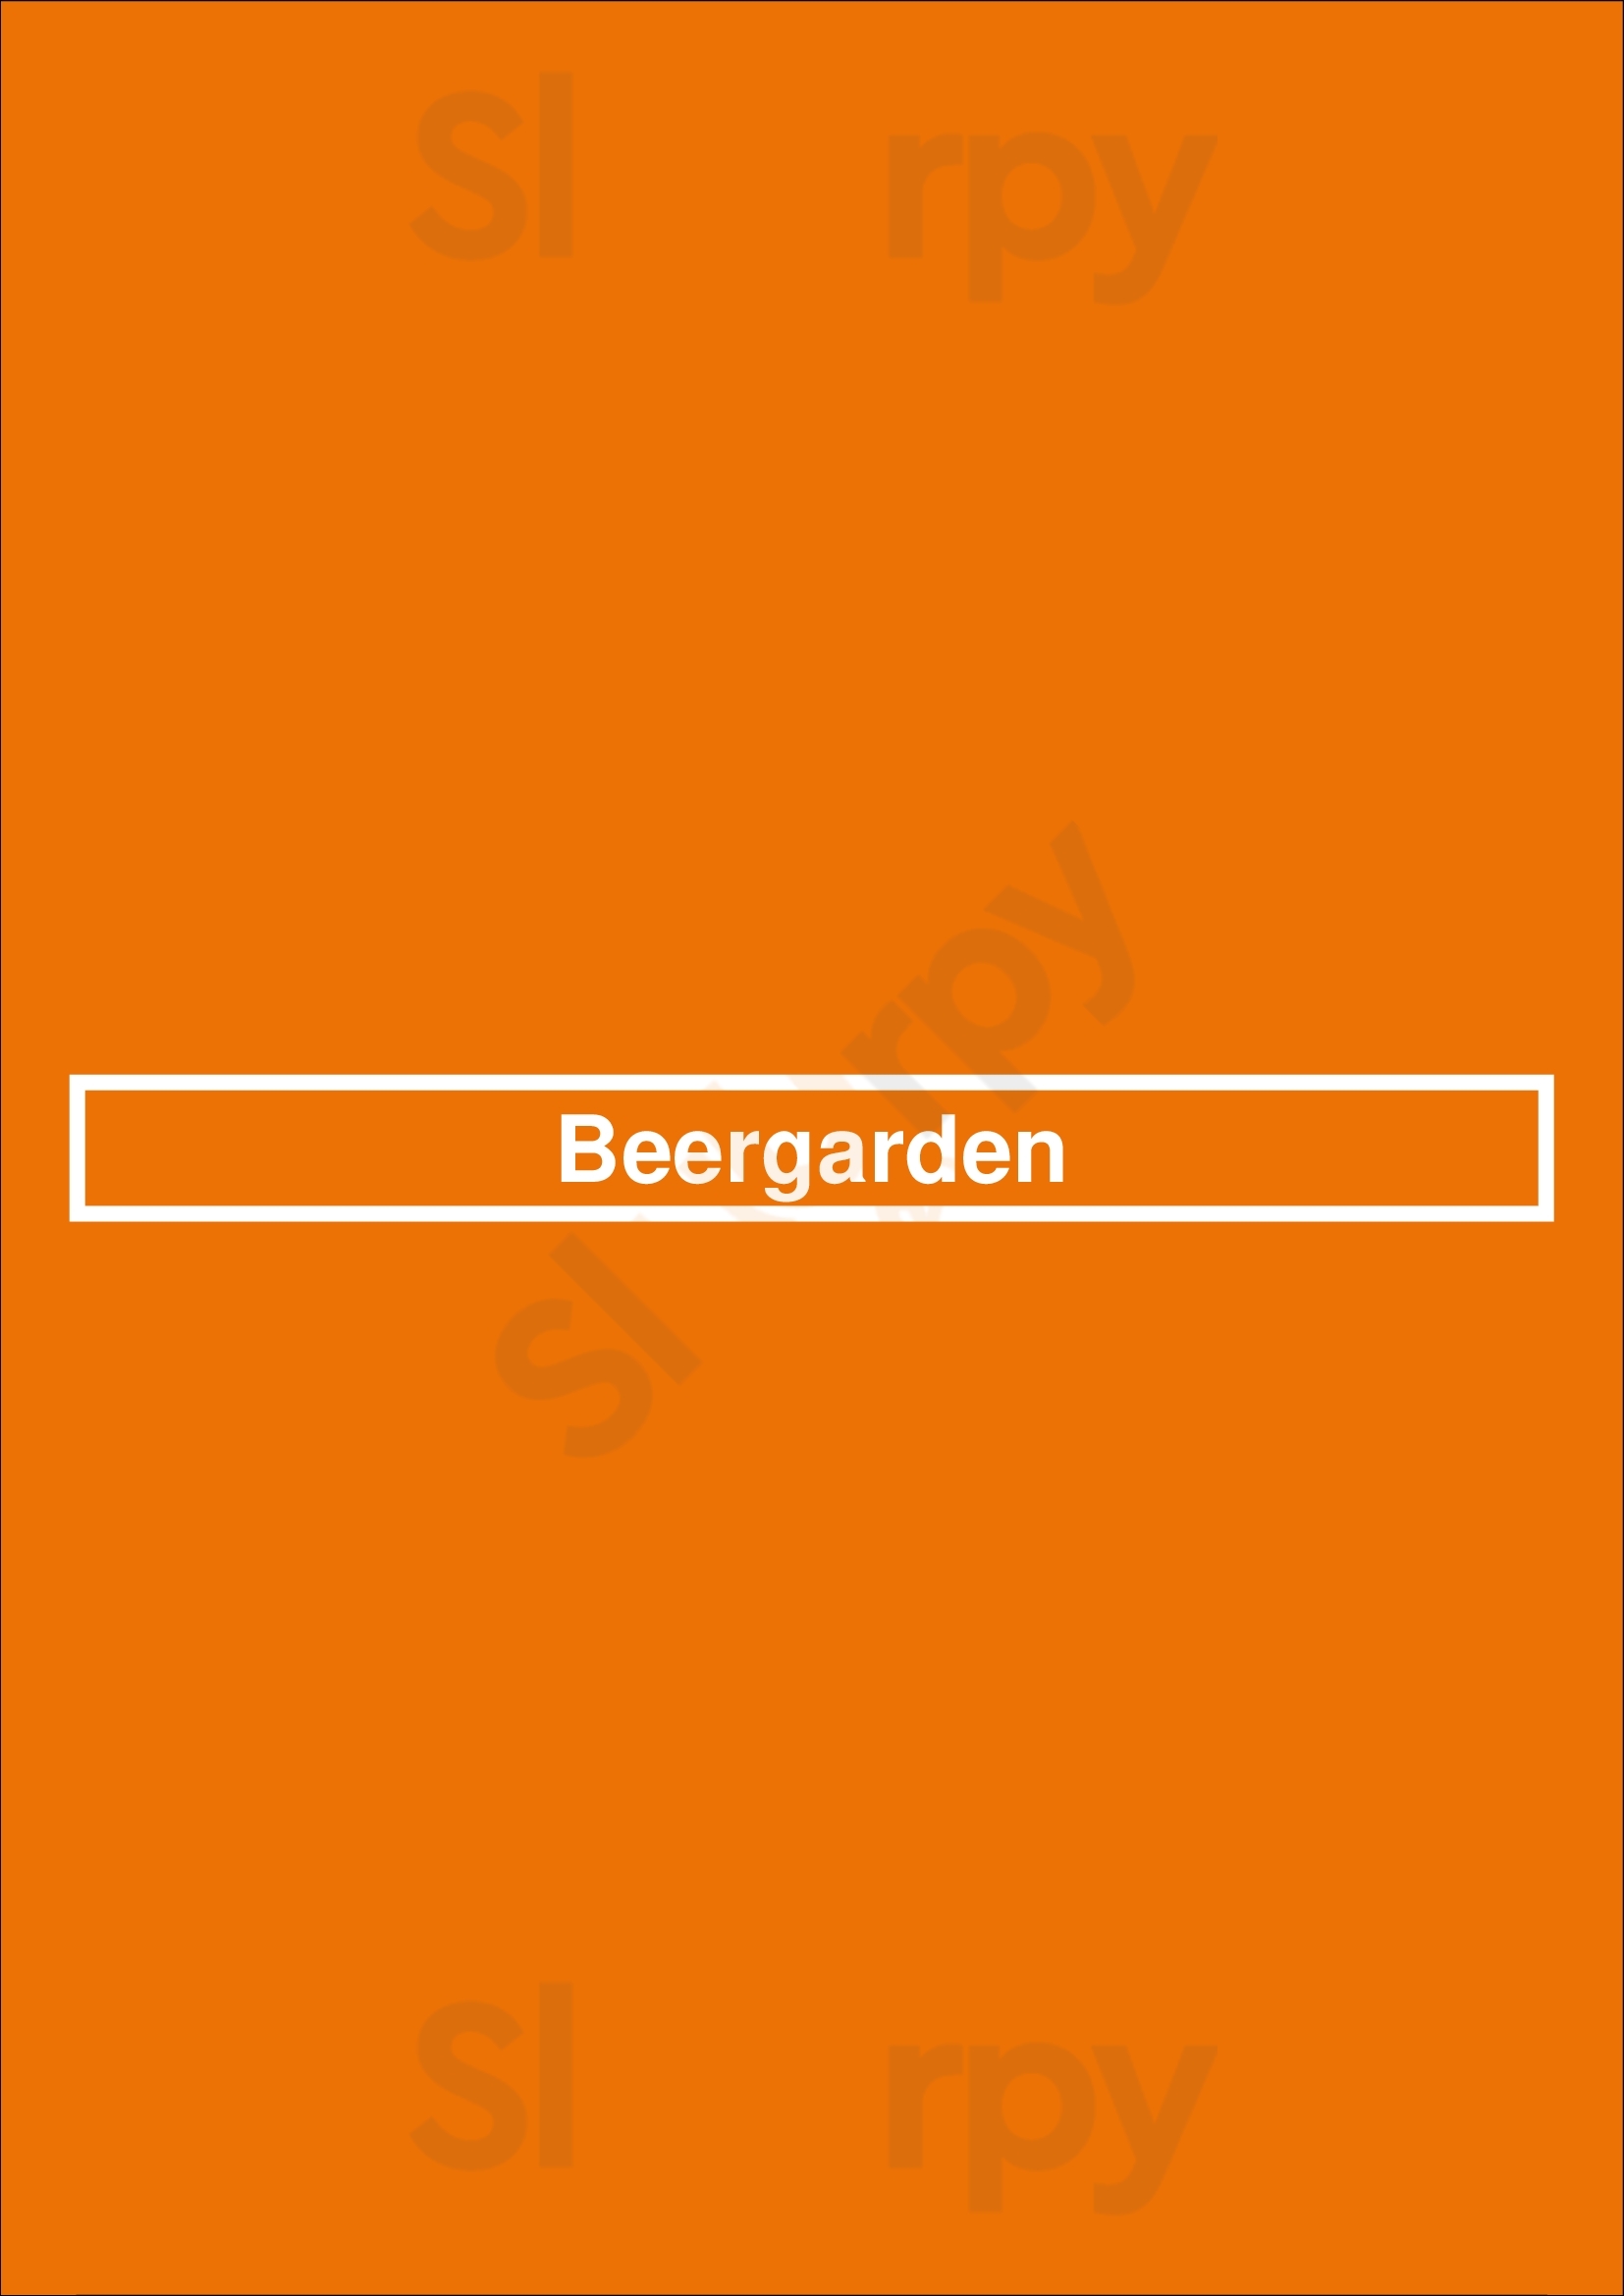 Beergarden Den Haag Menu - 1